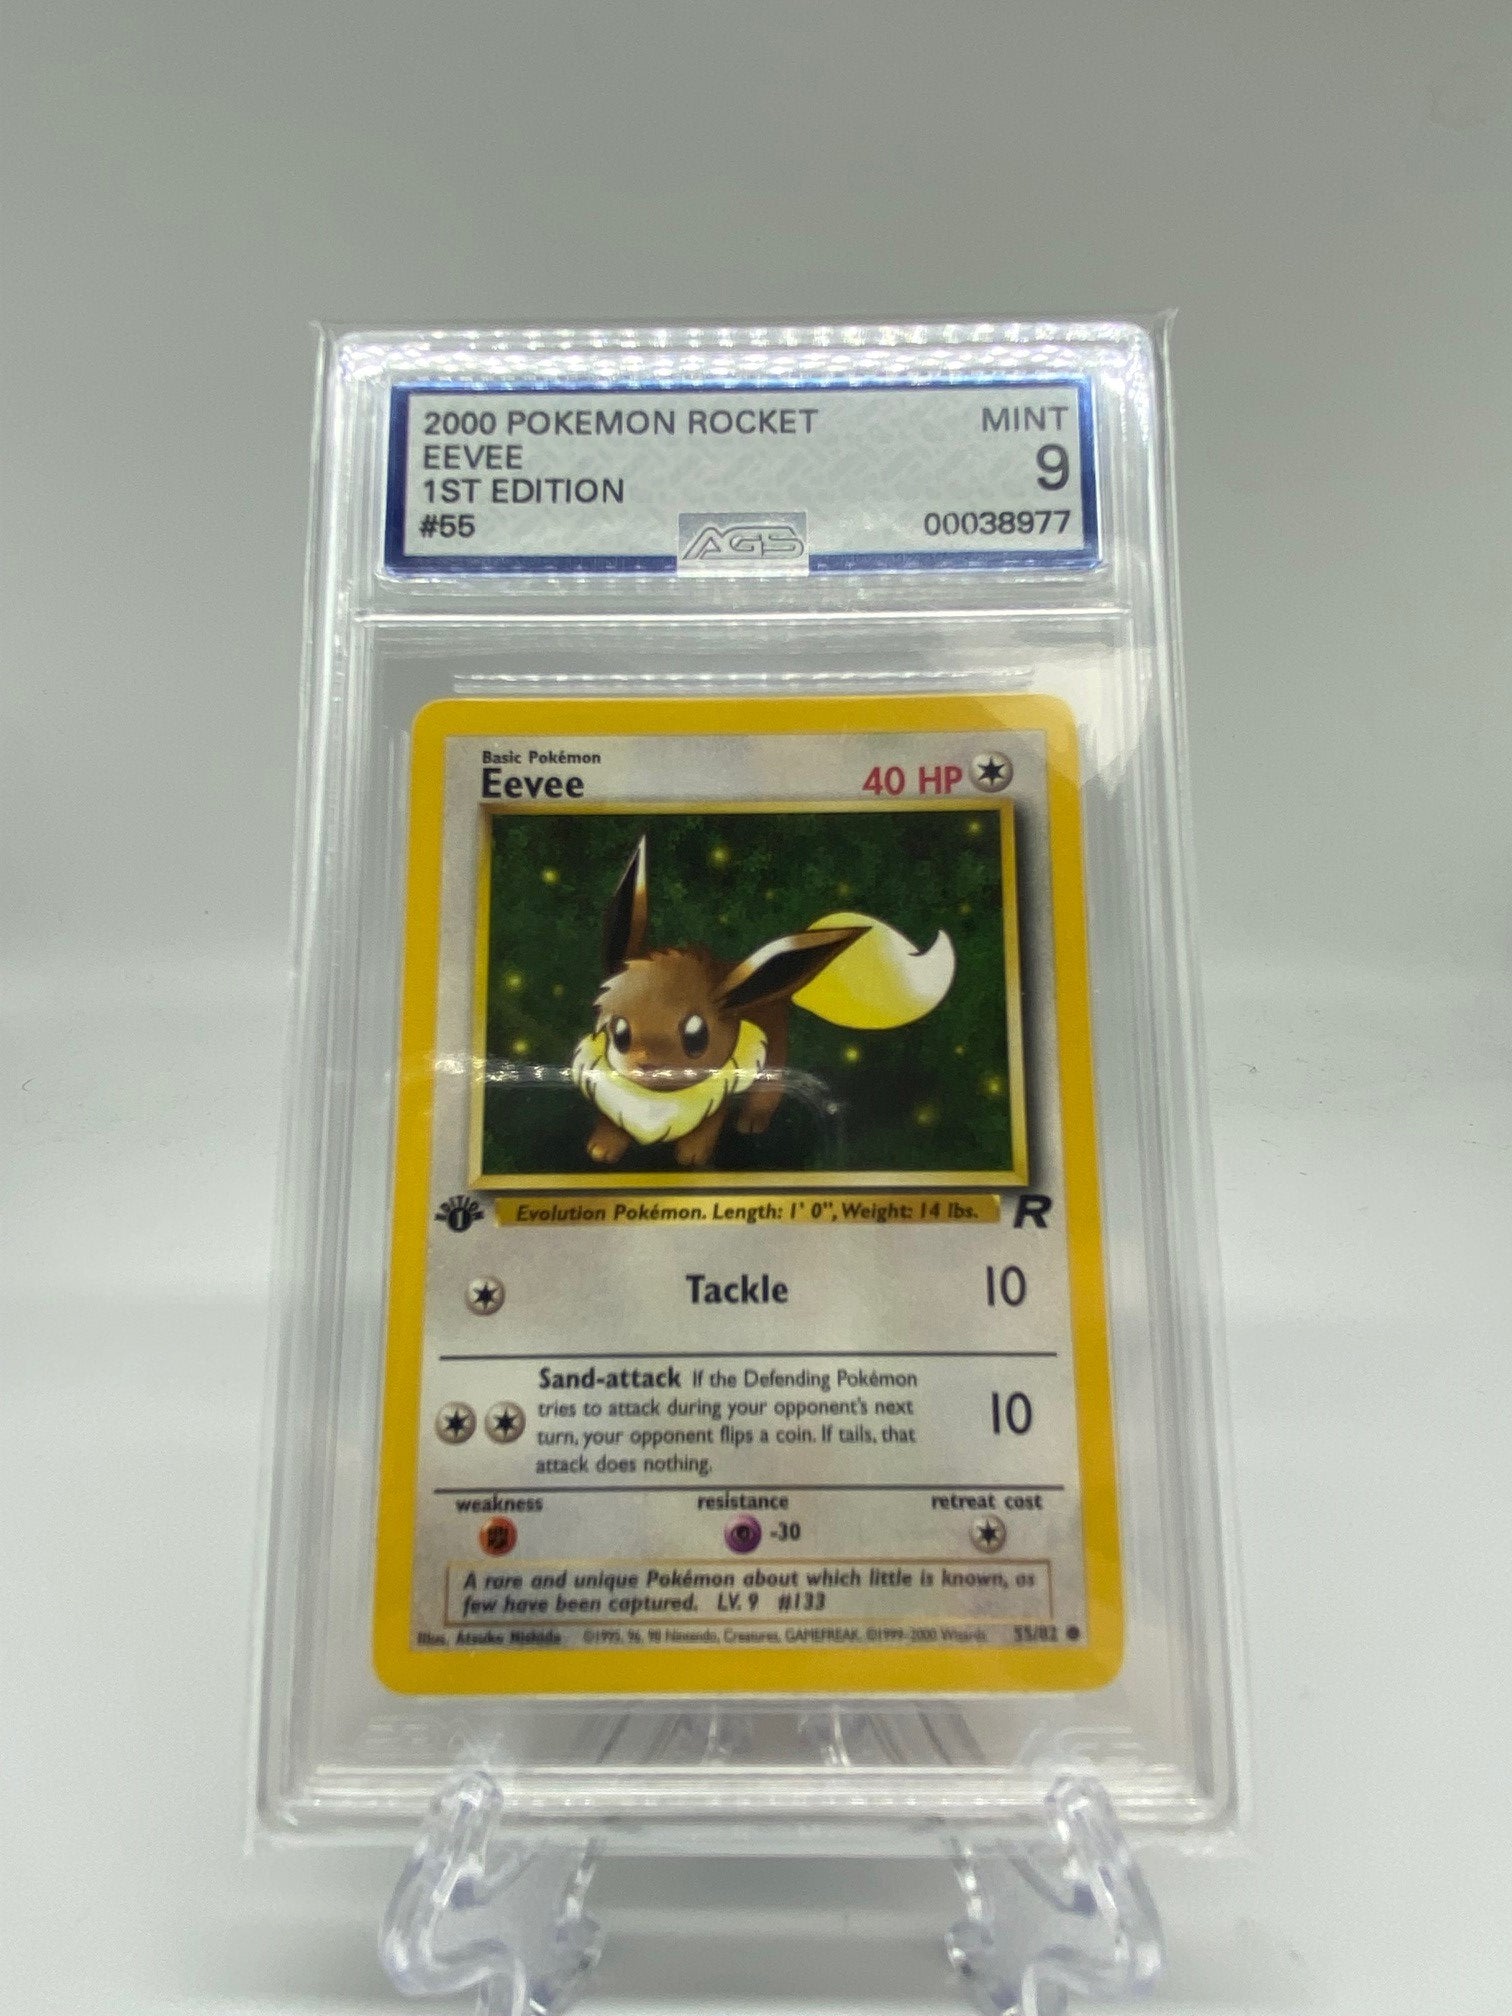 Eevee - Team Rocket Pokémon card 55/82